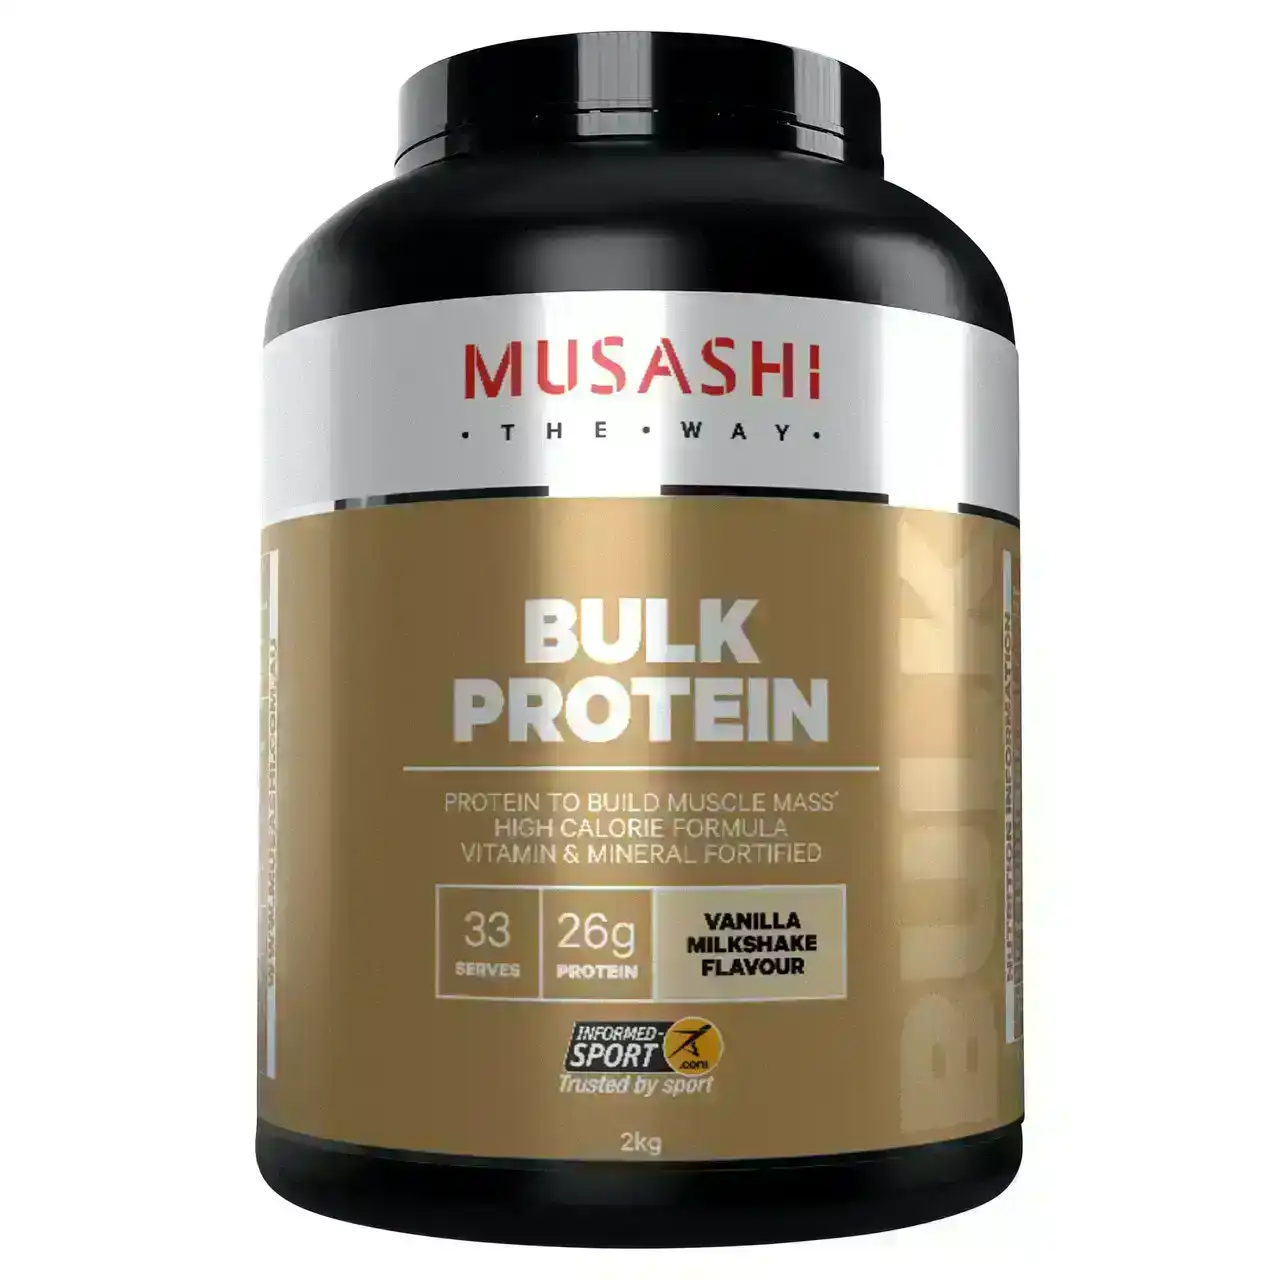 Musashi Bulk Protein Vanilla Milkshake 2kg